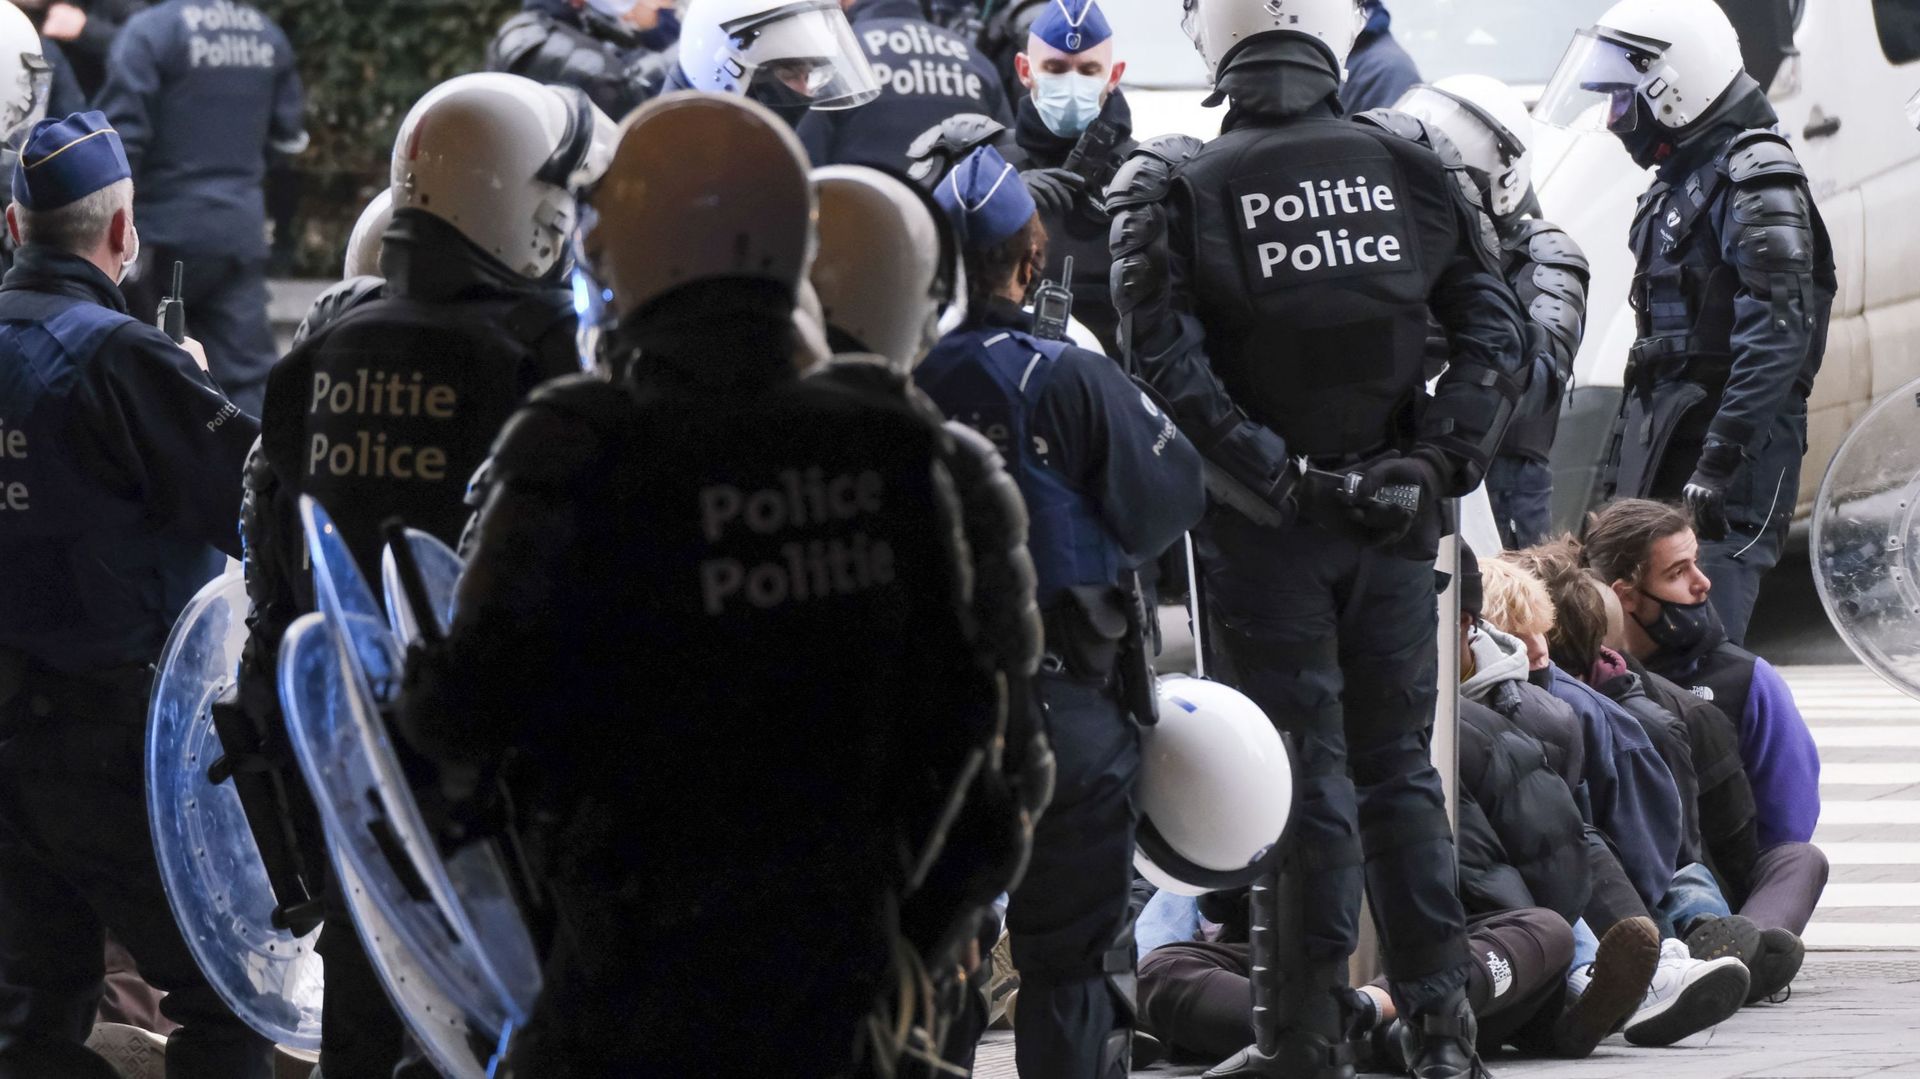 la Ligue dénonce une institution policière où règne un "racisme structurel".